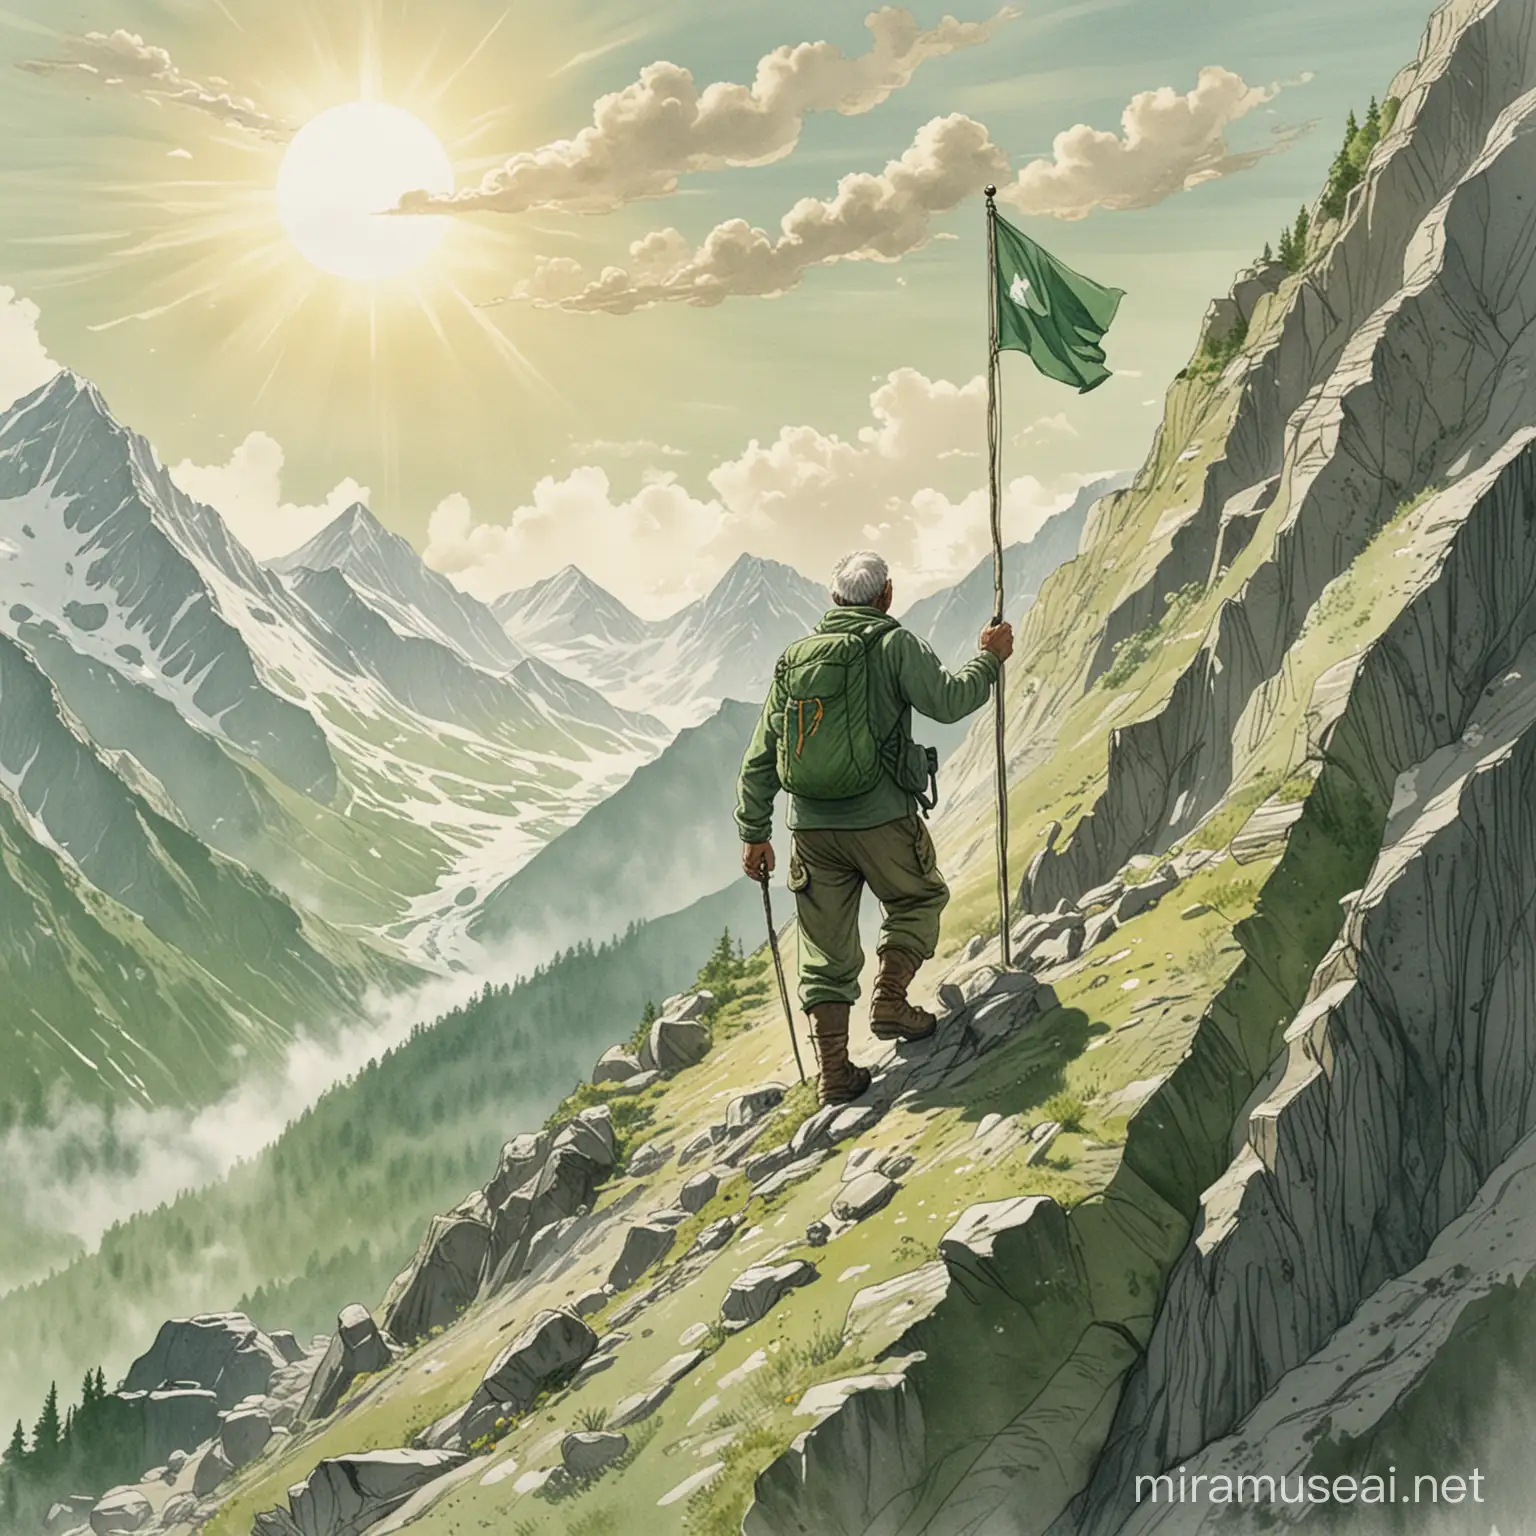 une dessin d'un homme de 60 ans en train de gravir une montagne.  il y a un drapeau sans écriture dessus tout en haut de la montagne. La montagne est dans les couleurs vertes. Il fait beau, le soleil est présent